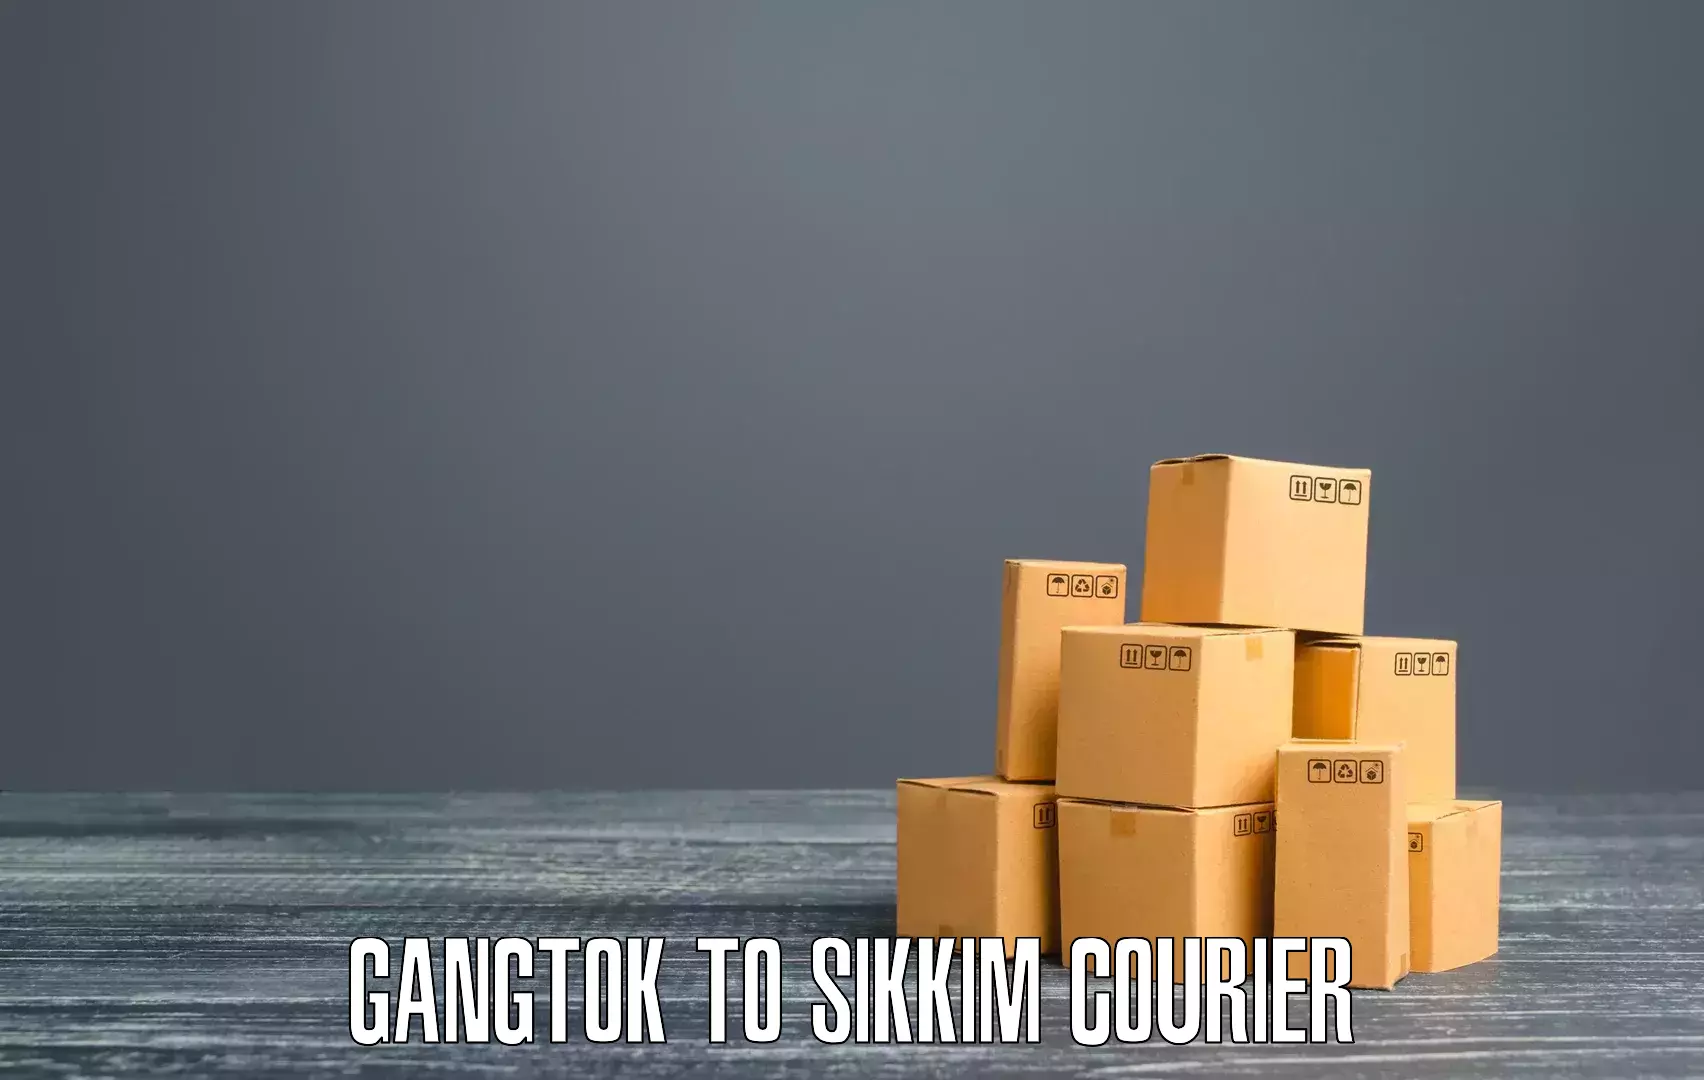 Efficient parcel service Gangtok to West Sikkim